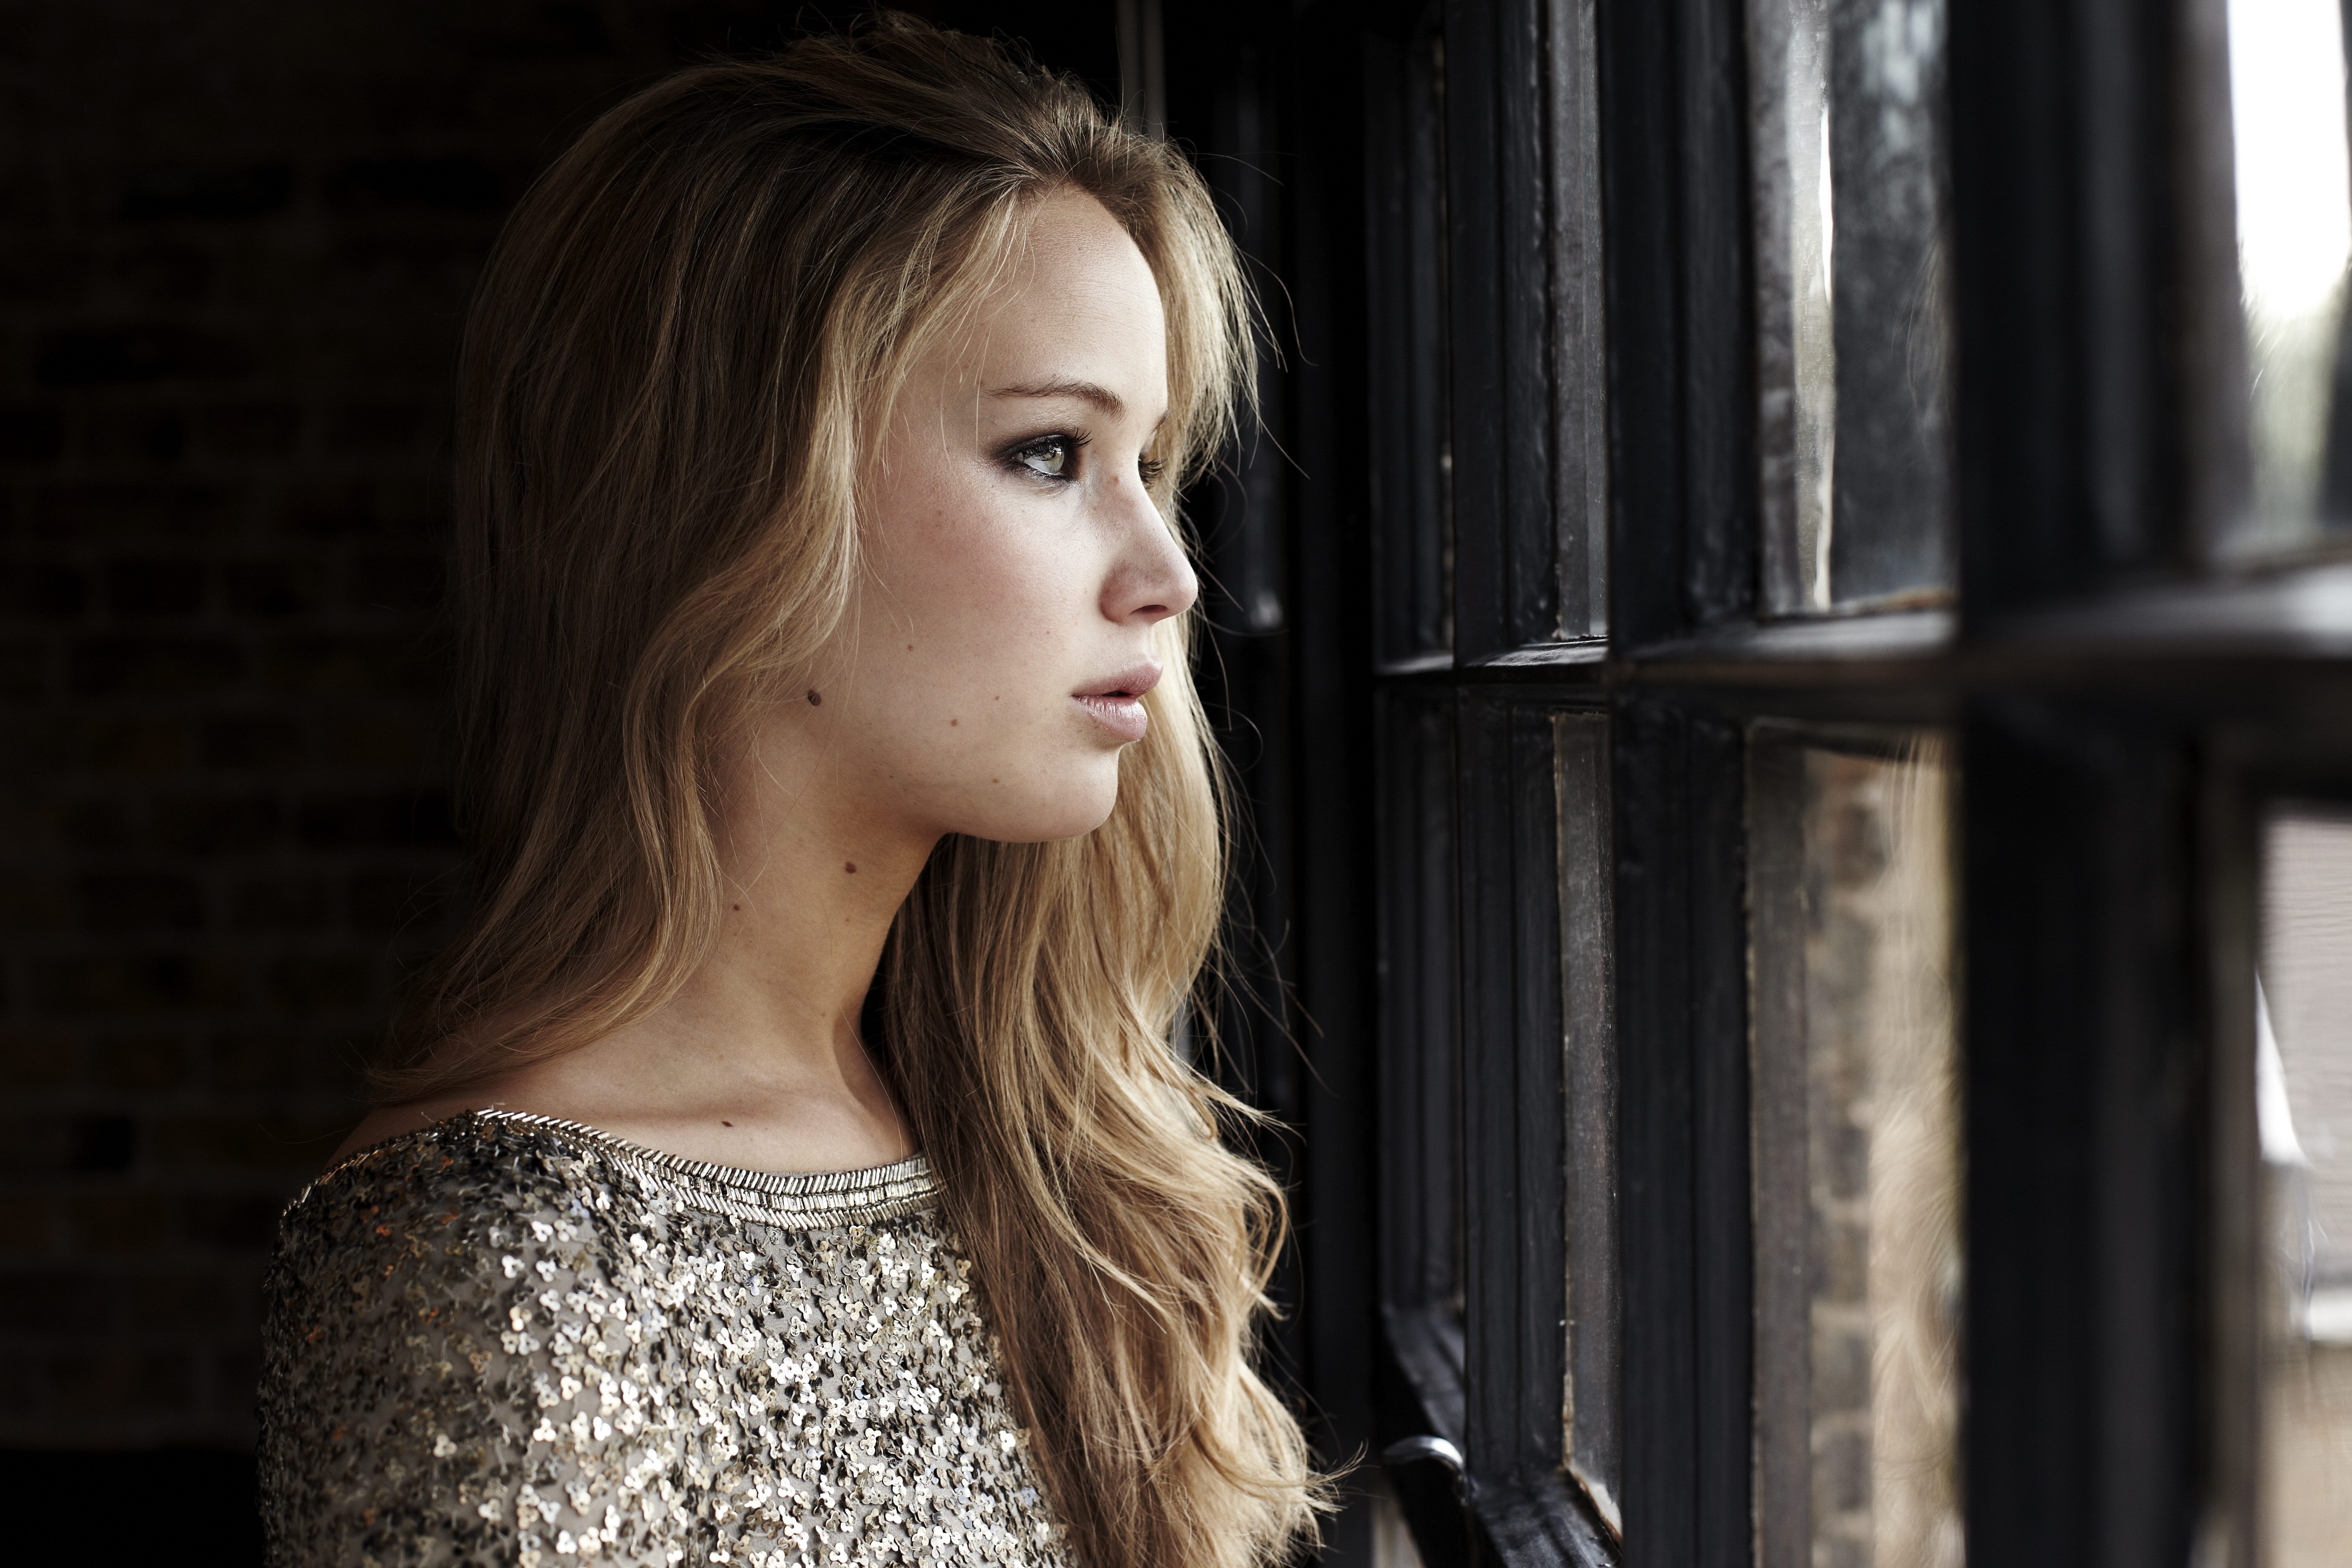 Portrait Women Actress Face Profile Celebrity Jennifer Lawrence Looking Out Window Silver Dress 5616x3744